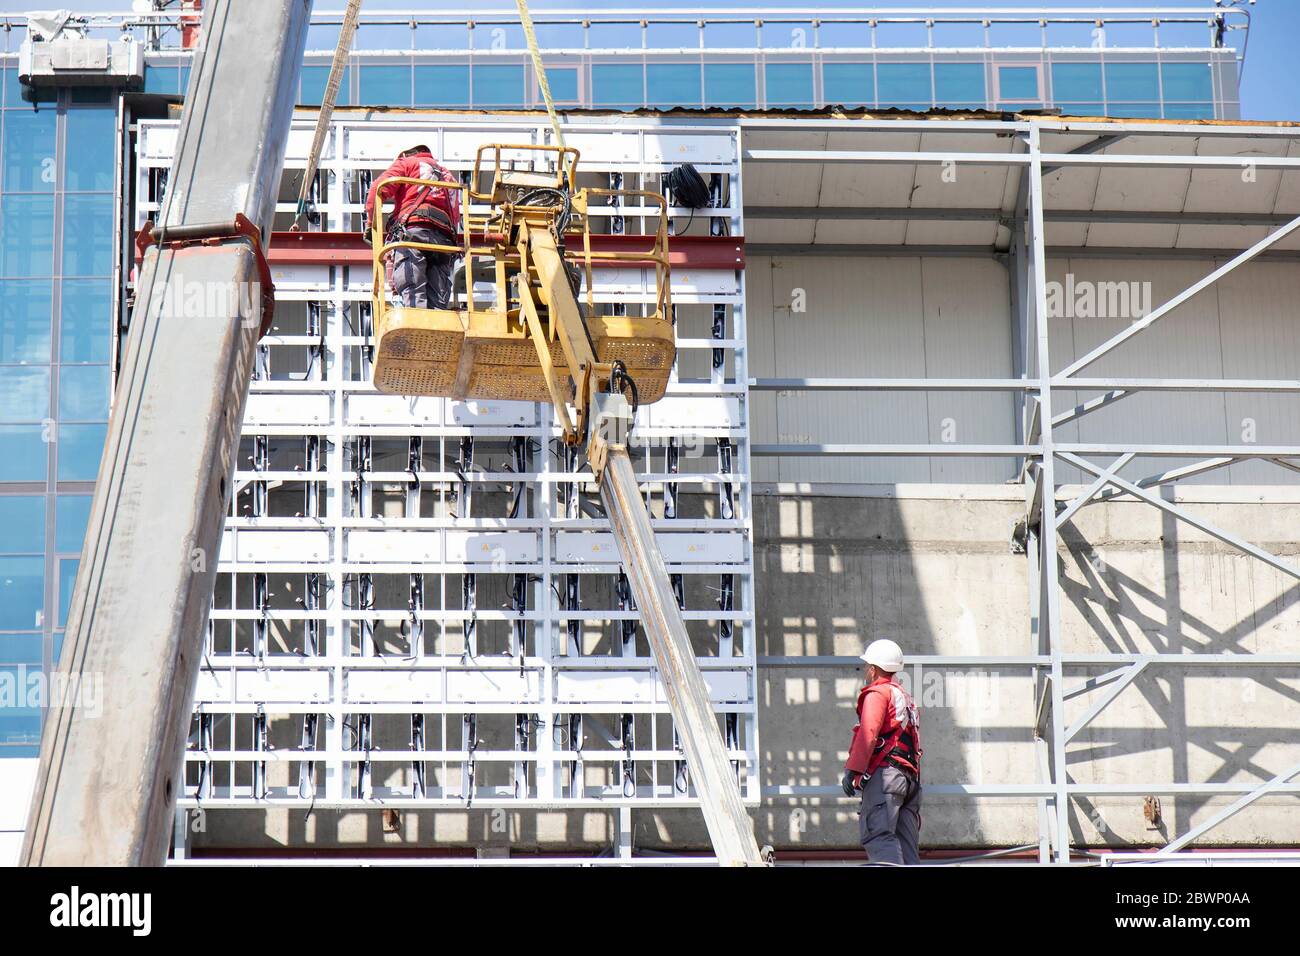 Belgrad, Serbien - 6. Mai 2020: Bauarbeiter im Krankorb installieren Außenverkleidung Metallkonstruktion auf einer Gebäudefassade Wand Stockfoto